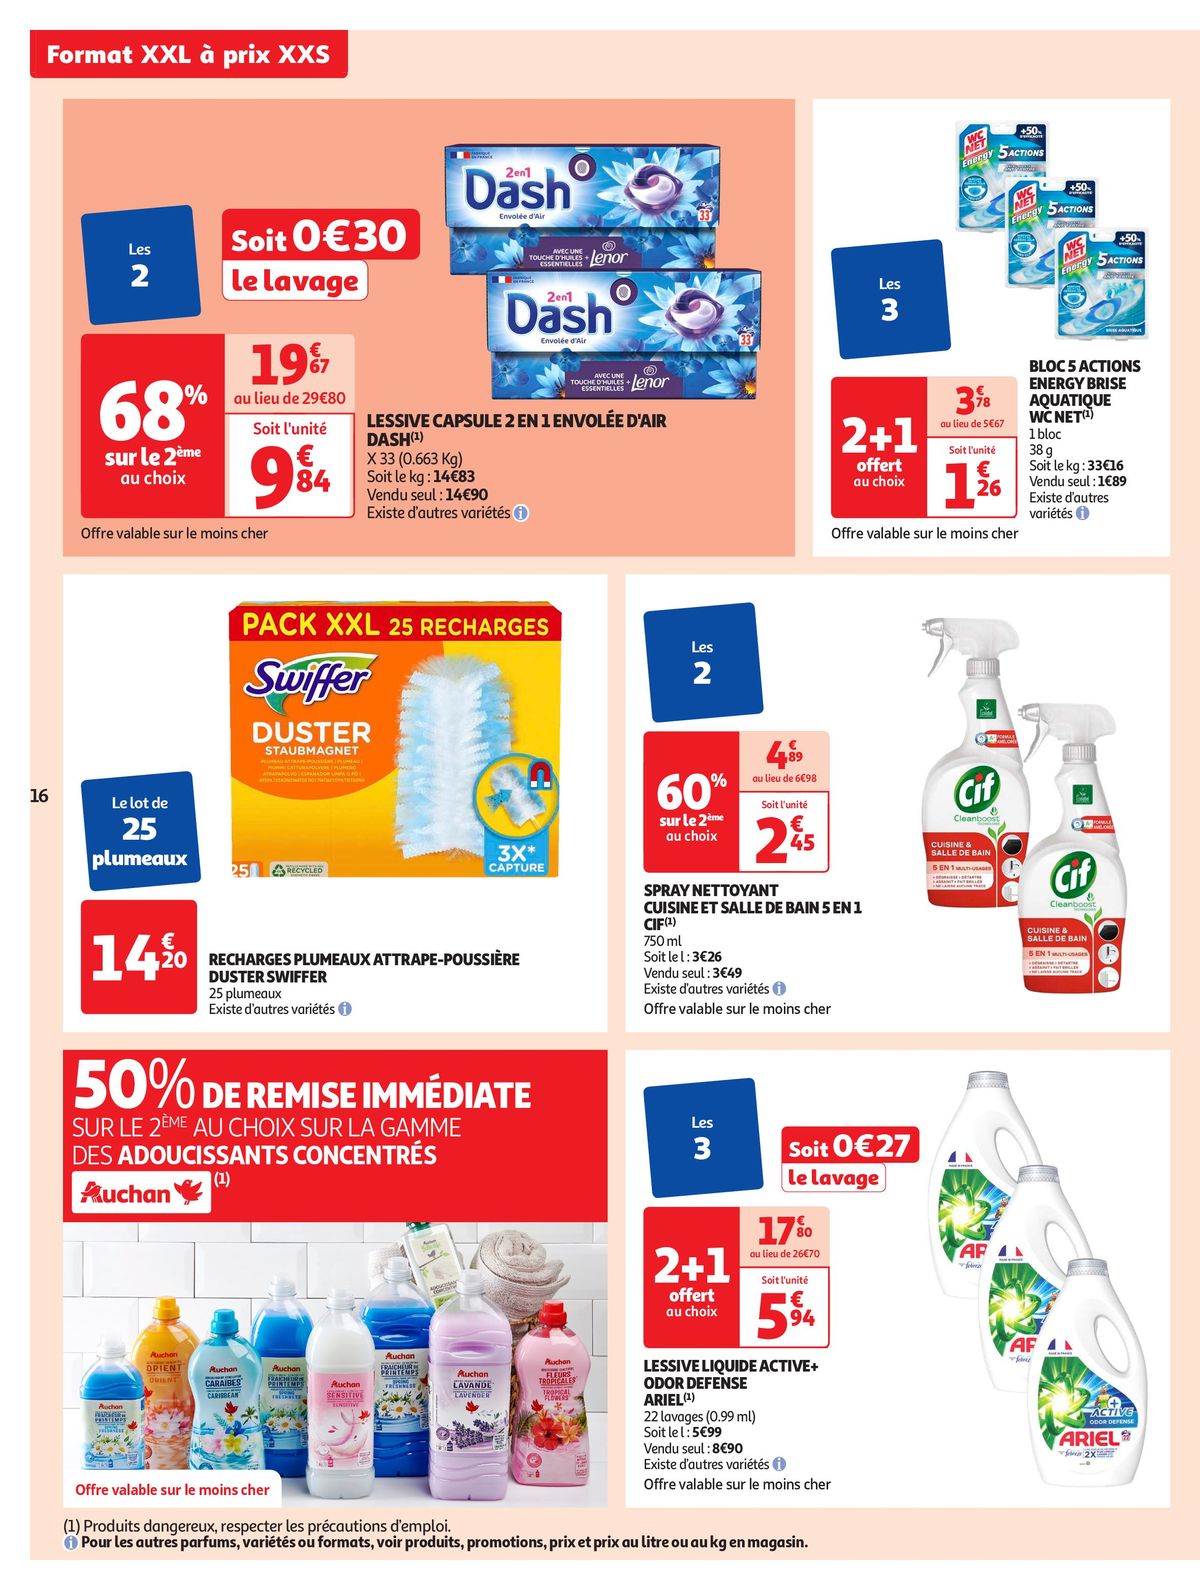 Catalogue Format XXL à prix XXS dans votre supermarché, page 00016